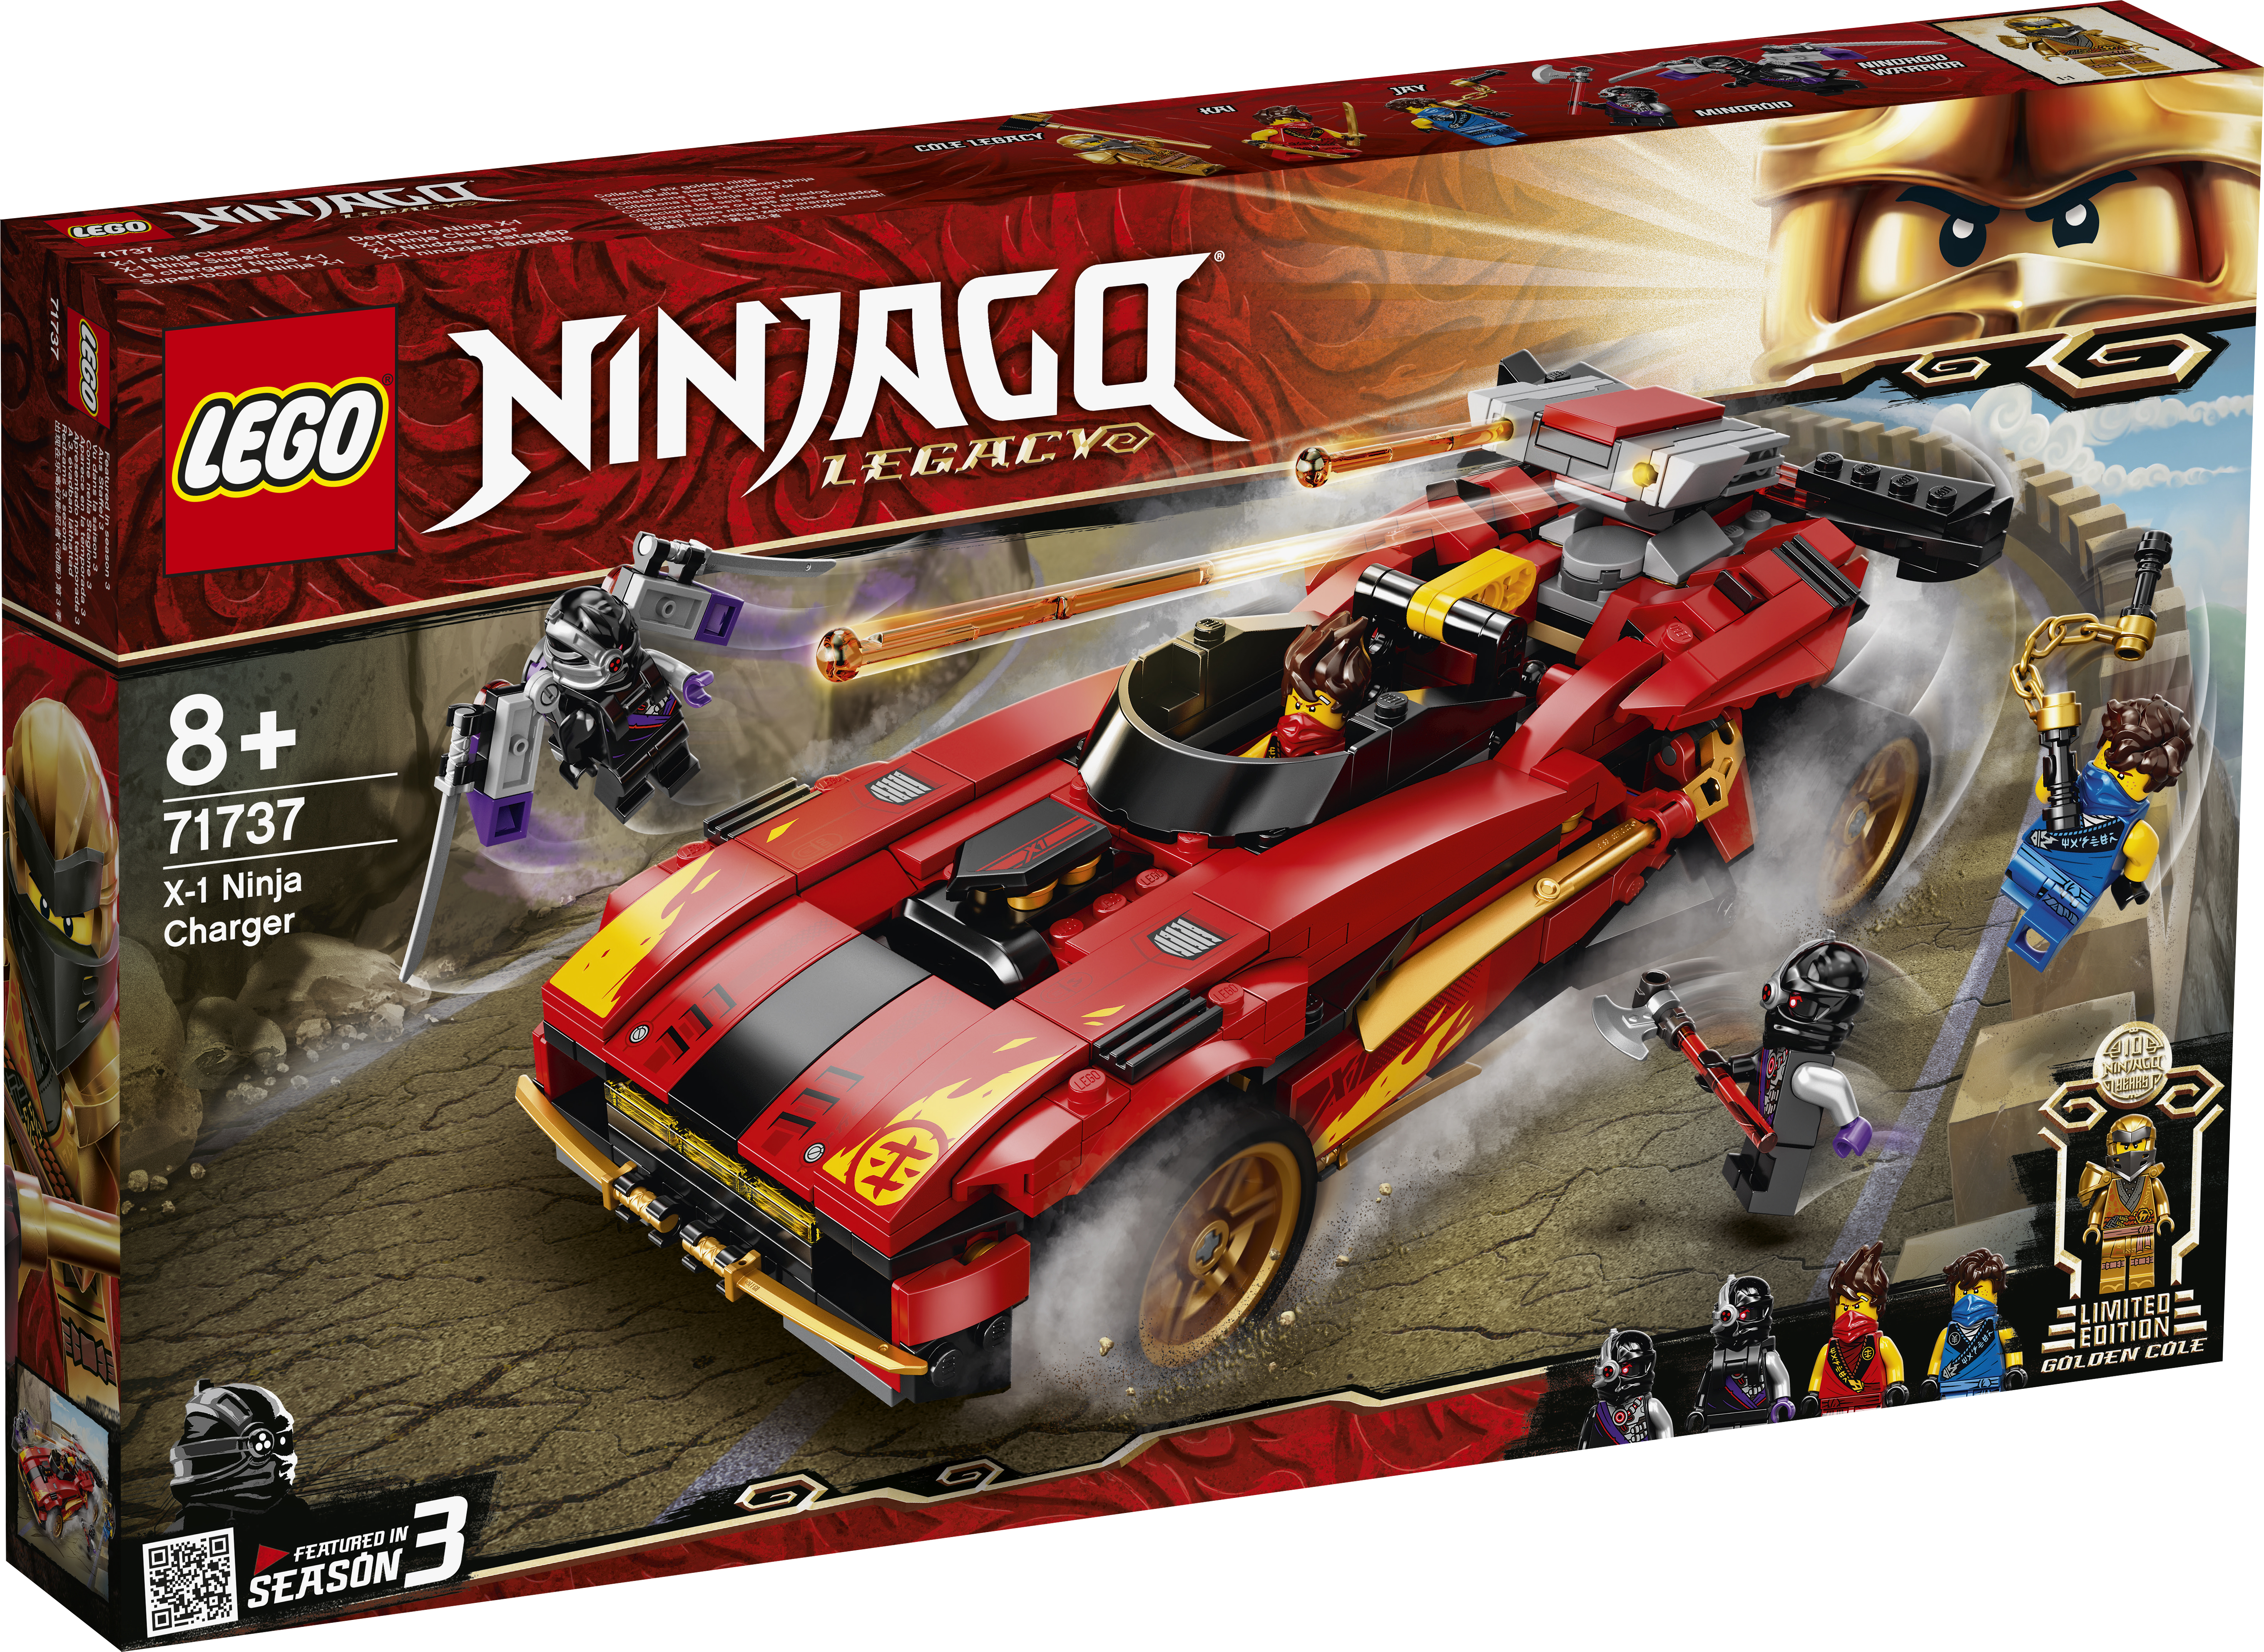 Ninjago 71737 X-1 Ninjabil